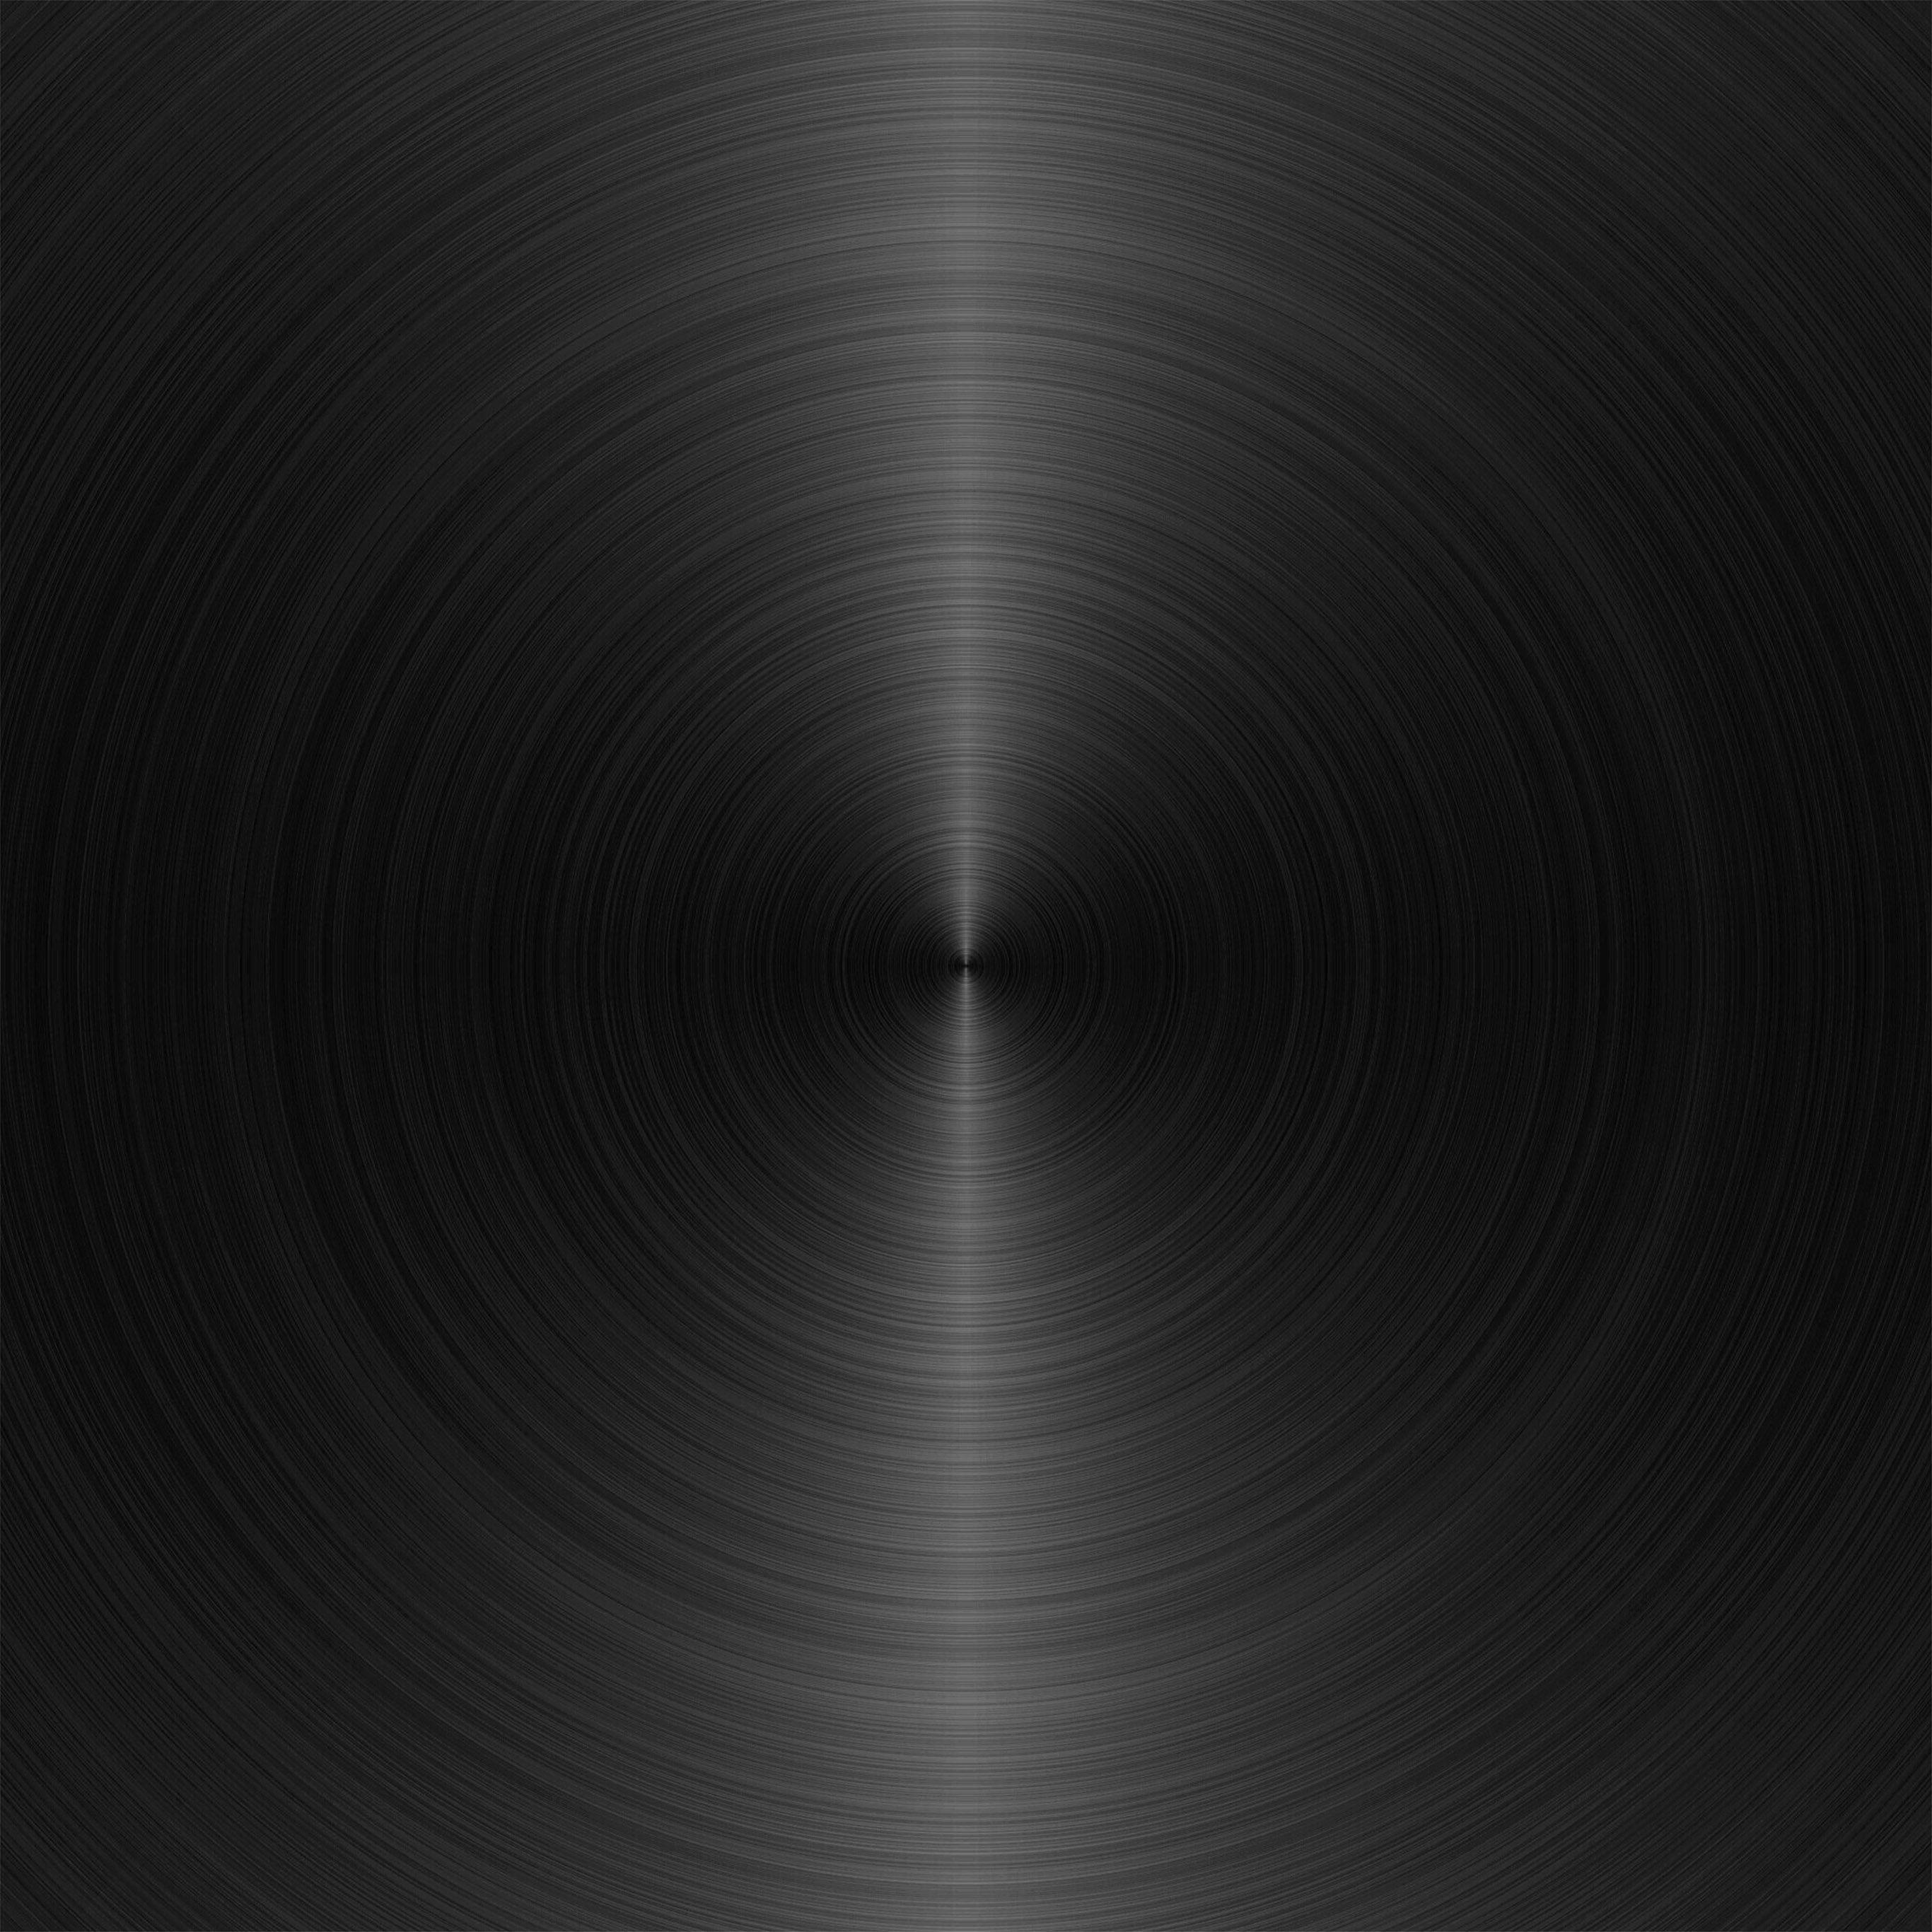 2732x2732 Hình tròn kết cấu hình tròn bằng kim loại Hình nền màu xám đậm